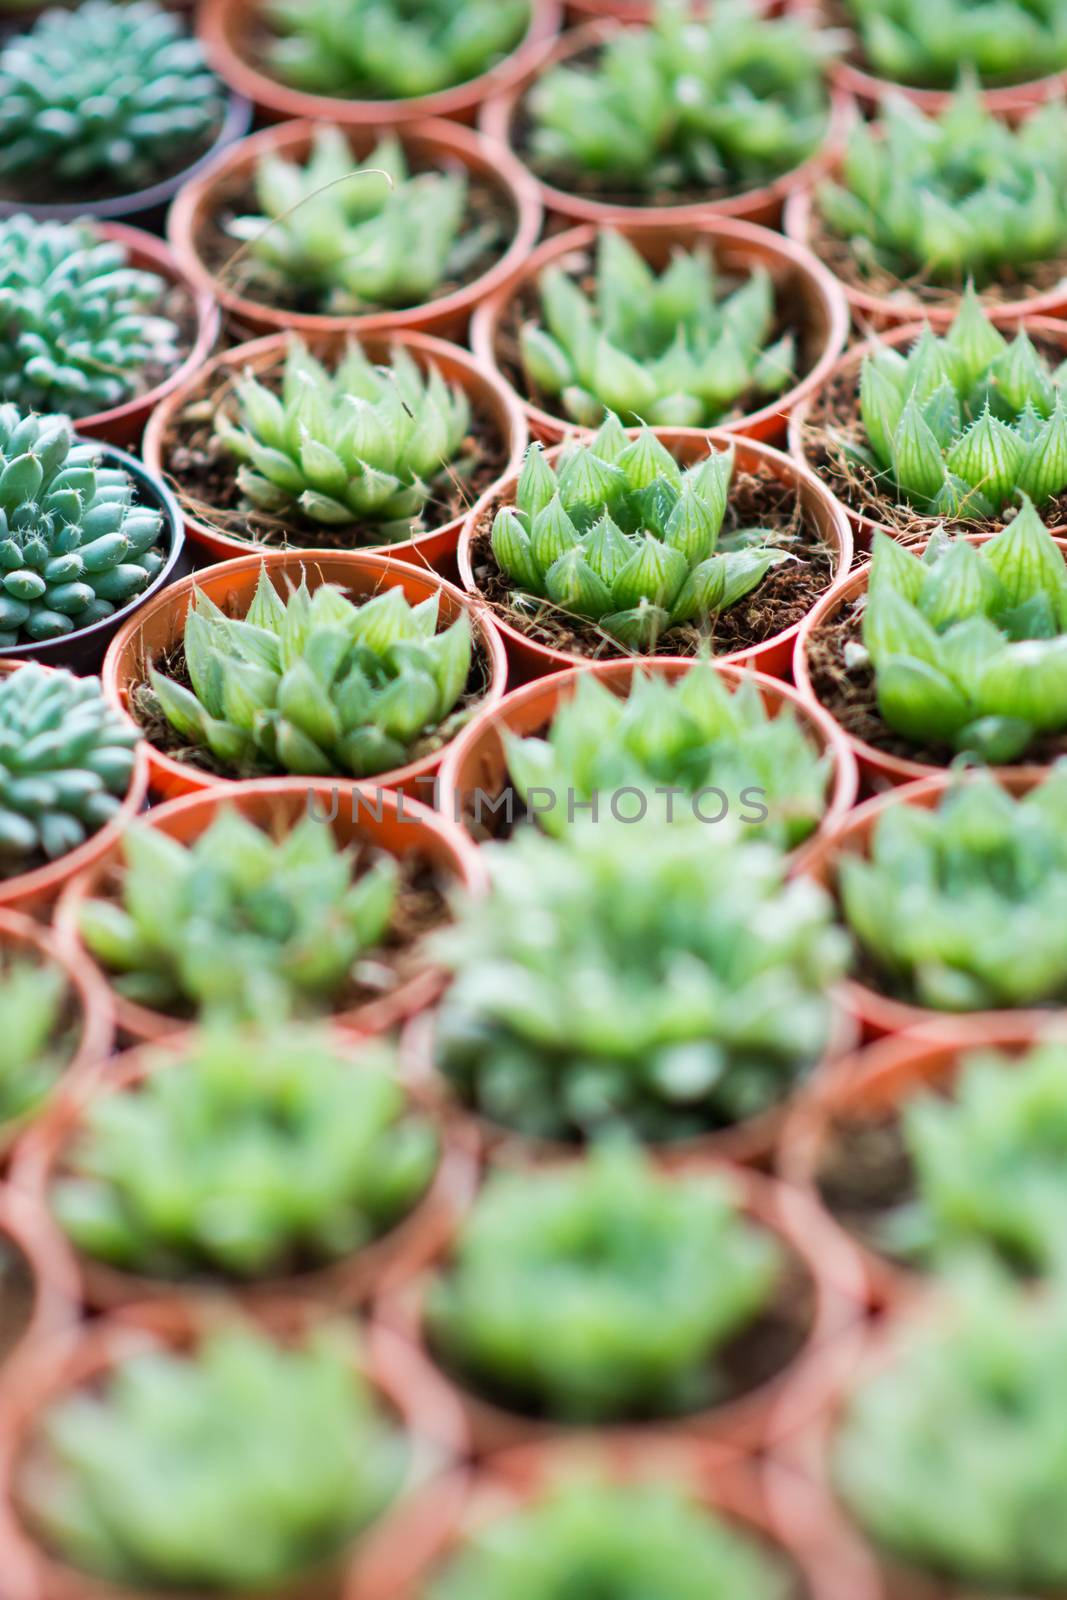 Arrangement miniature green succulent plants by Sorapop